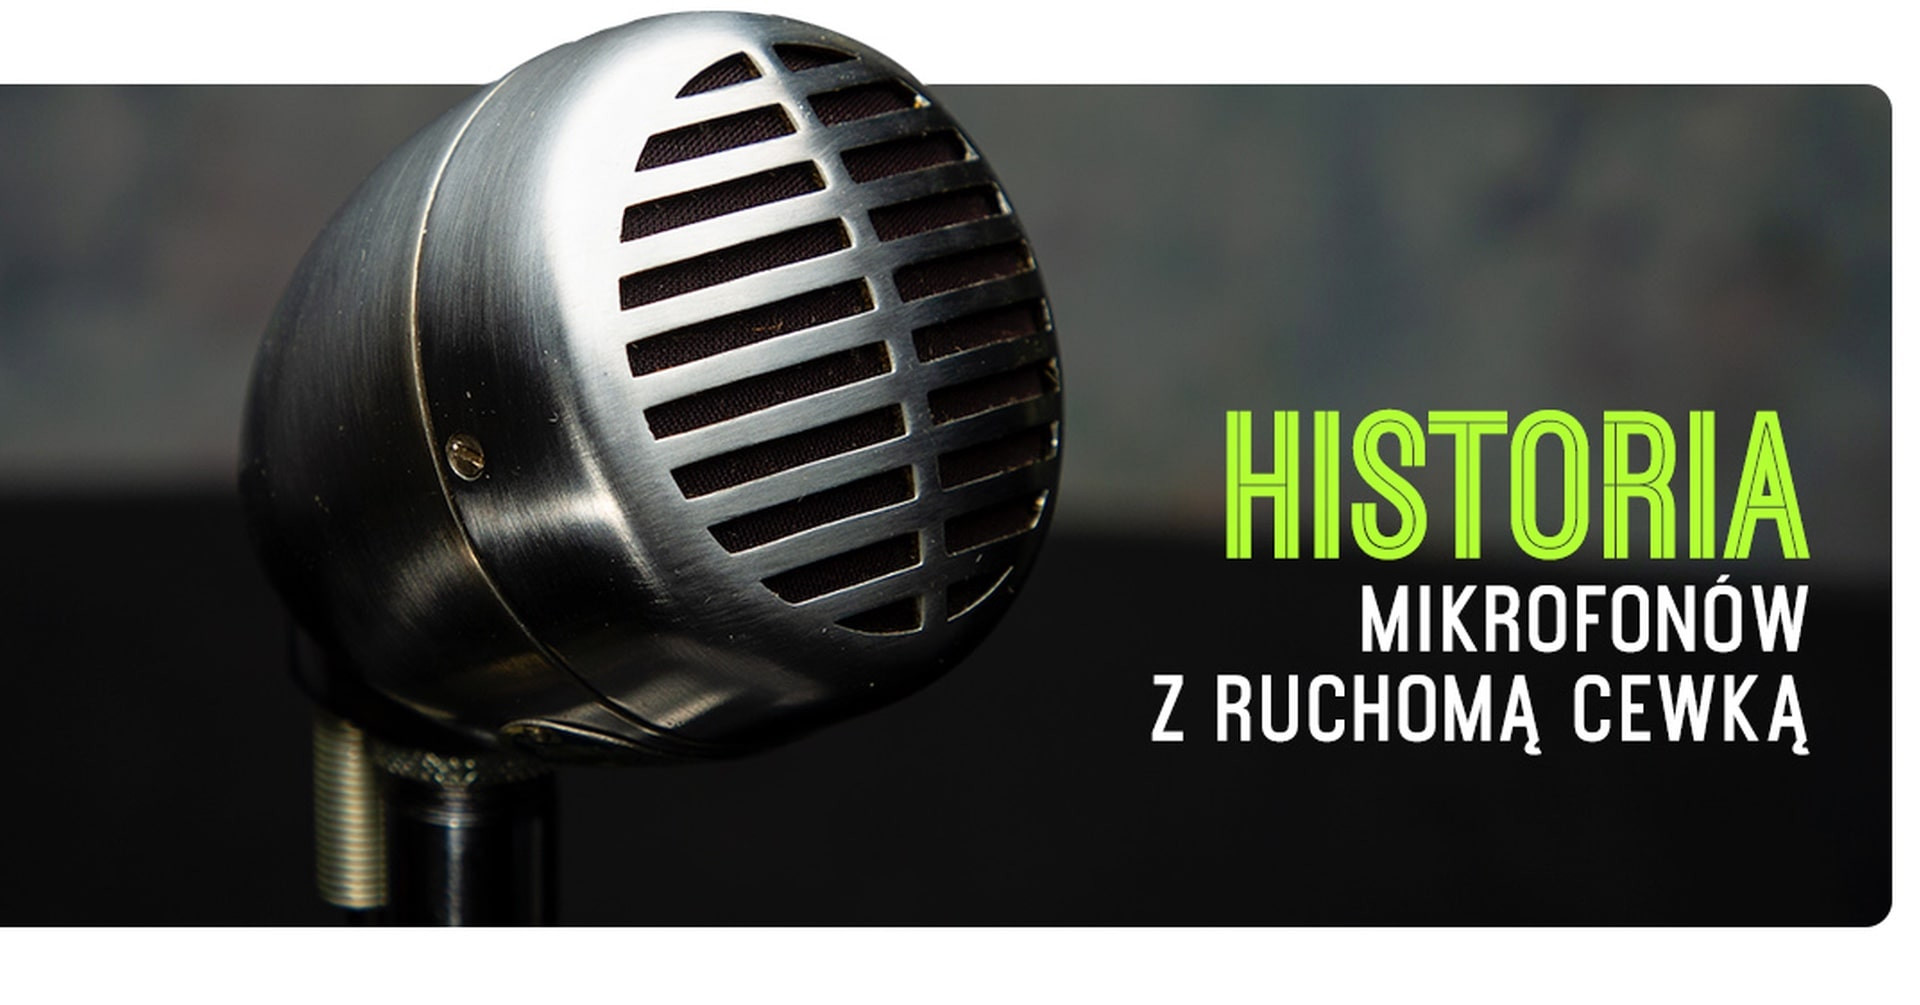 Historia mikrofonów dynamicznych Shure z ruchomą cewką